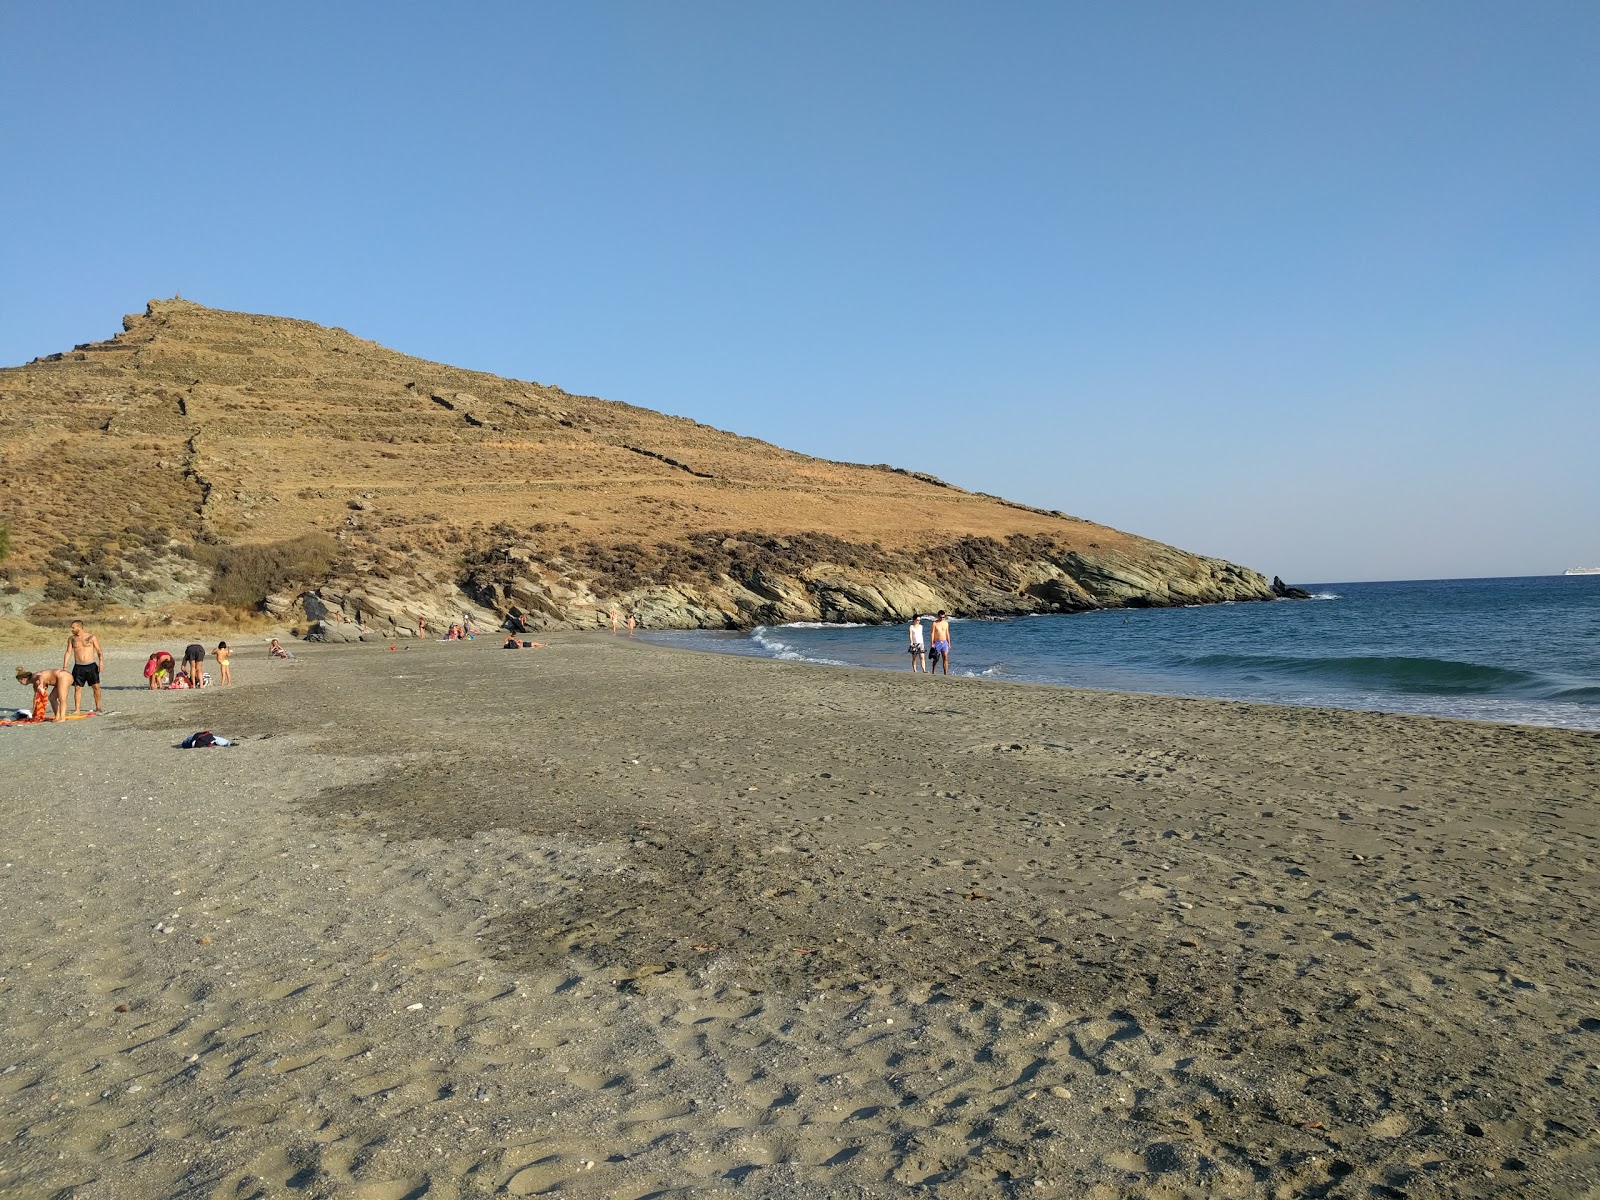 Agios Fokas'in fotoğrafı geniş plaj ile birlikte